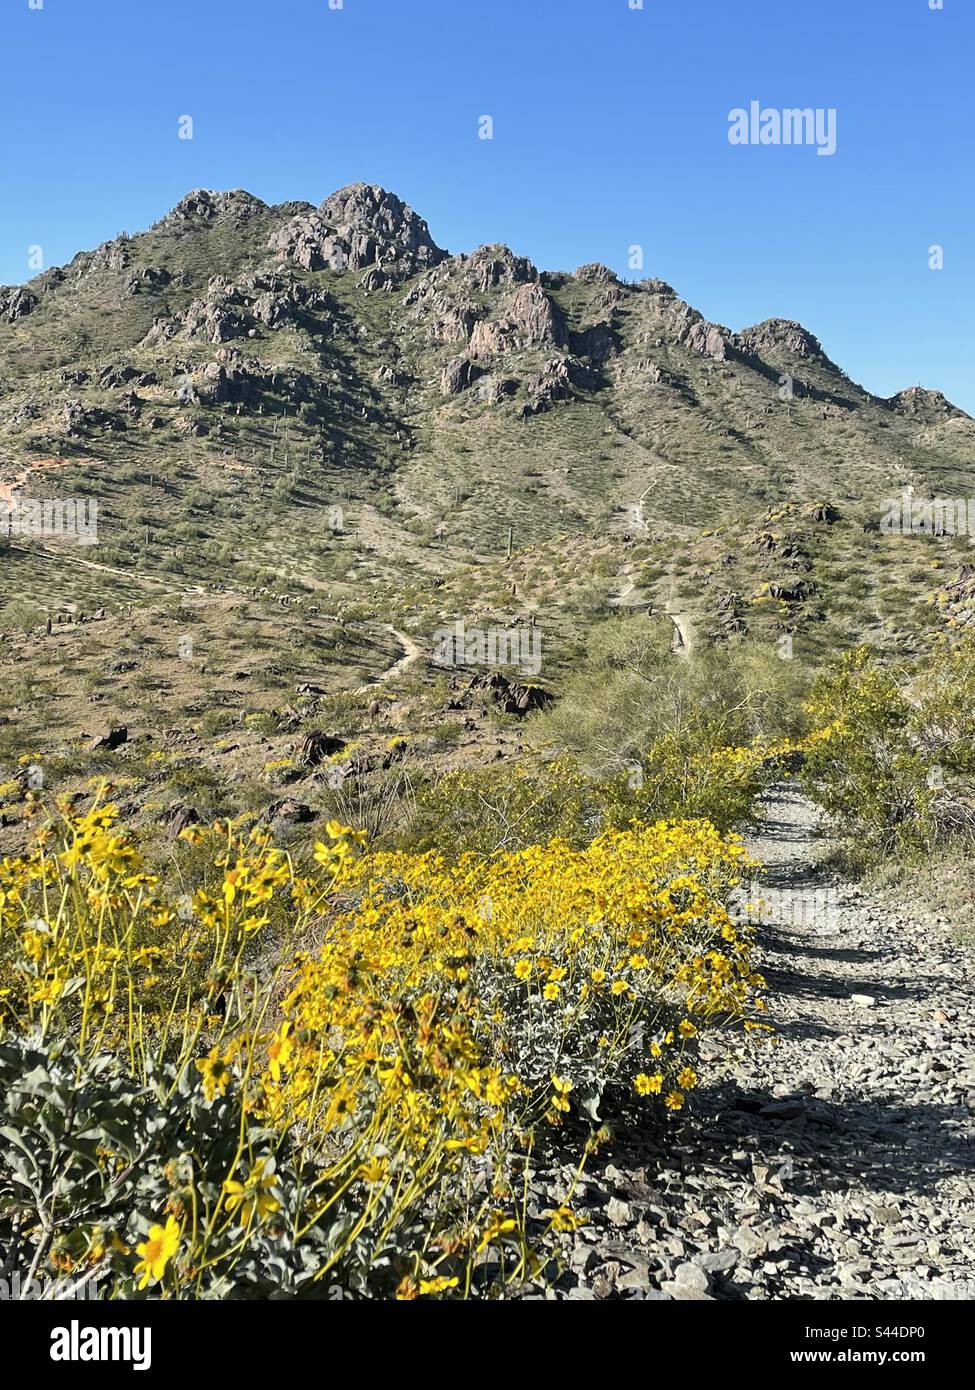 Les montagnes de Phoenix conservent le sentier au printemps, buissons fragiles couvrent des pentes rocheuses, jaune brillant parmi les rochers déchiquetés, fleurs sauvages, désert de Sonoran, ciel bleu vif, pic Piestewa, Arizona Banque D'Images